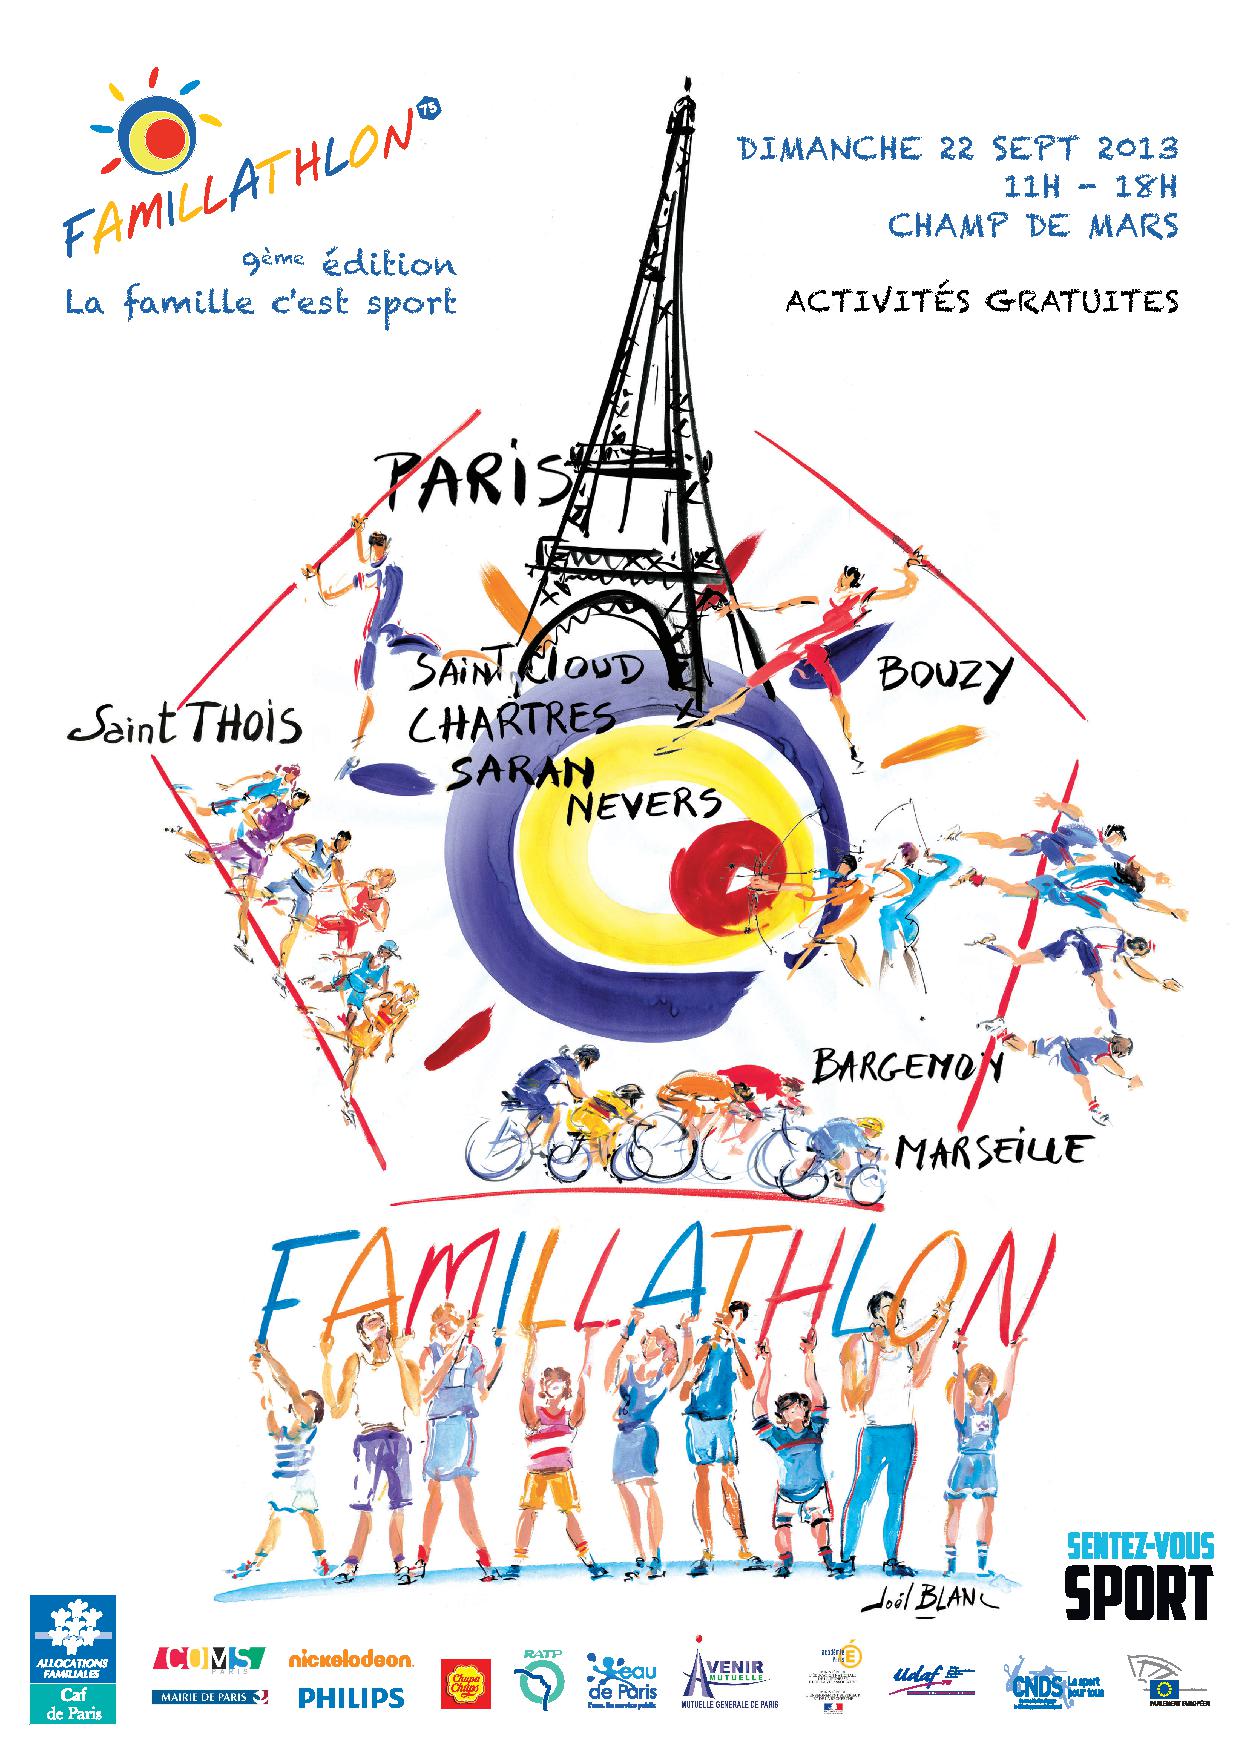 FamillathlonA5-Paris2013